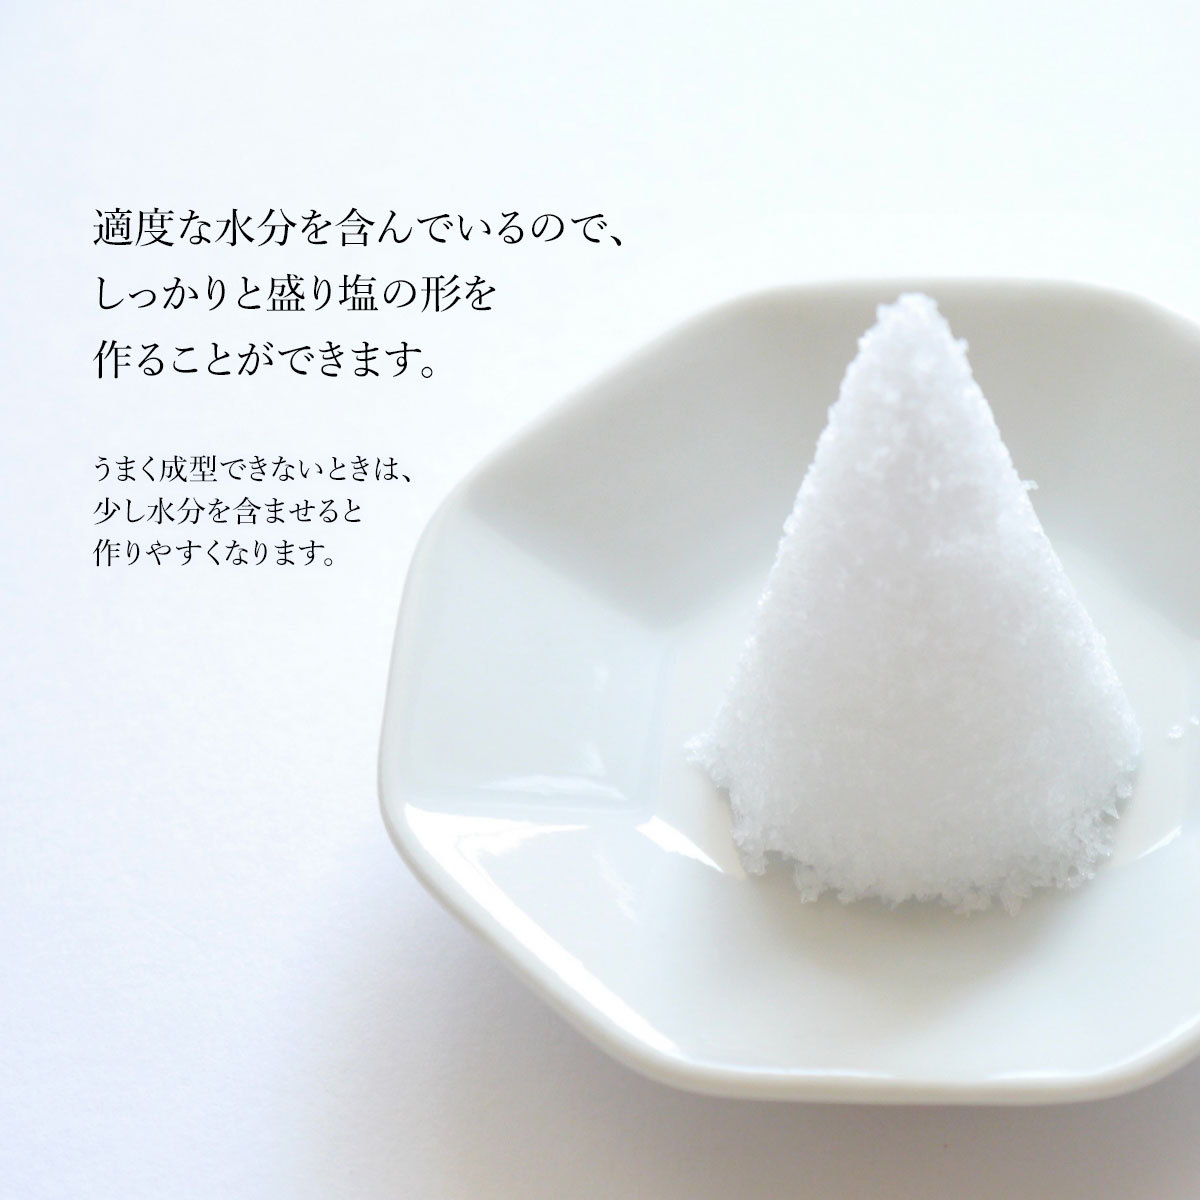  Kiyoshi . соль пик соль 500g.. для . Kiyoshi .. соль пик соль. соль . соль местного производства оригинальный .. ах соль вход туалет ванна . тип похороны домашний алтарь . исключая .. оплата 